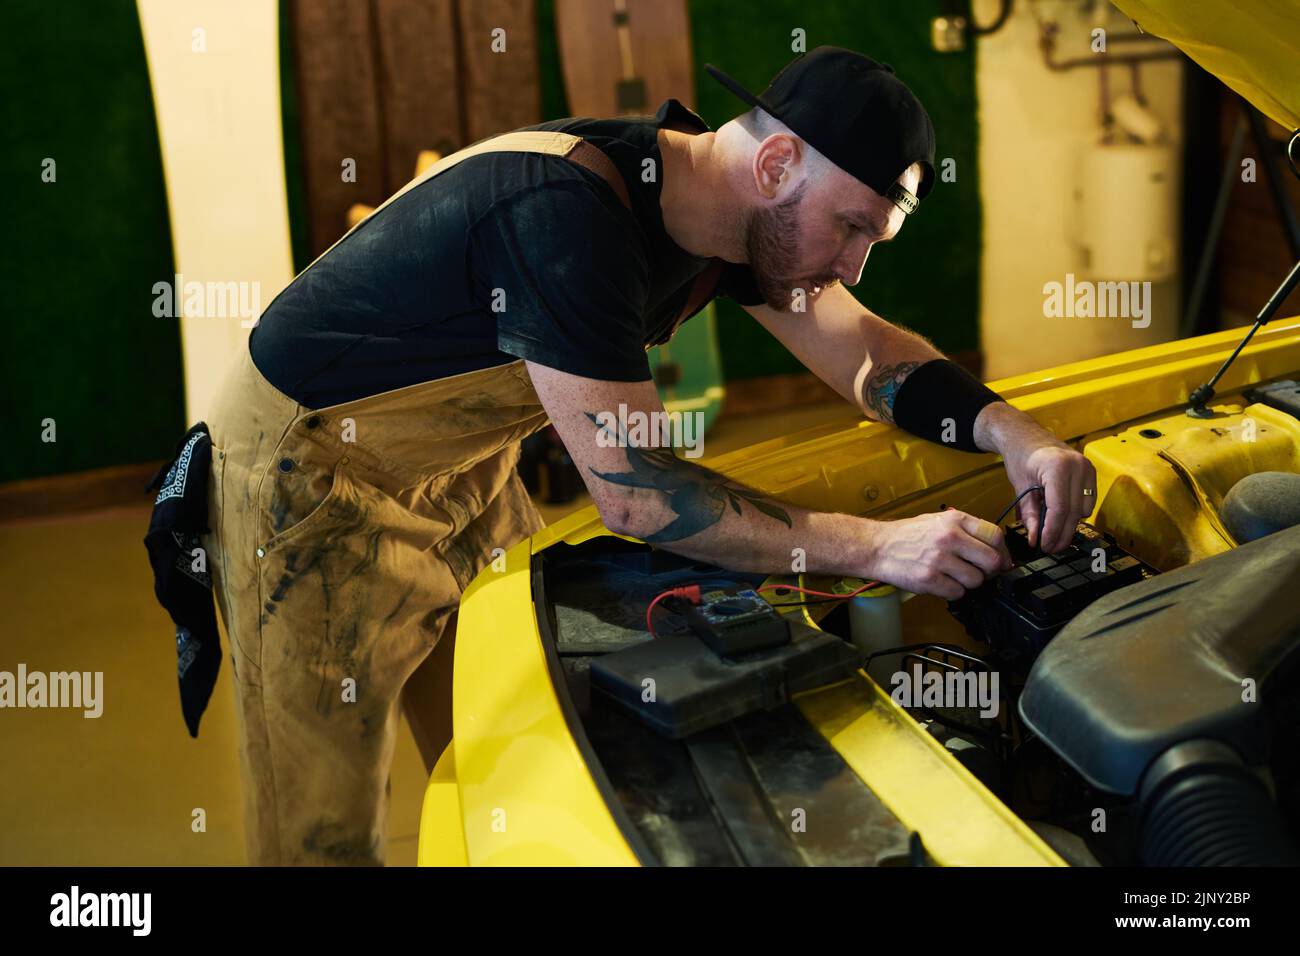 Técnico joven en ropa de trabajo que realiza diagnósticos técnicos del motor del coche mientras se dobla sobre el motor y utiliza un multímetro Foto de stock